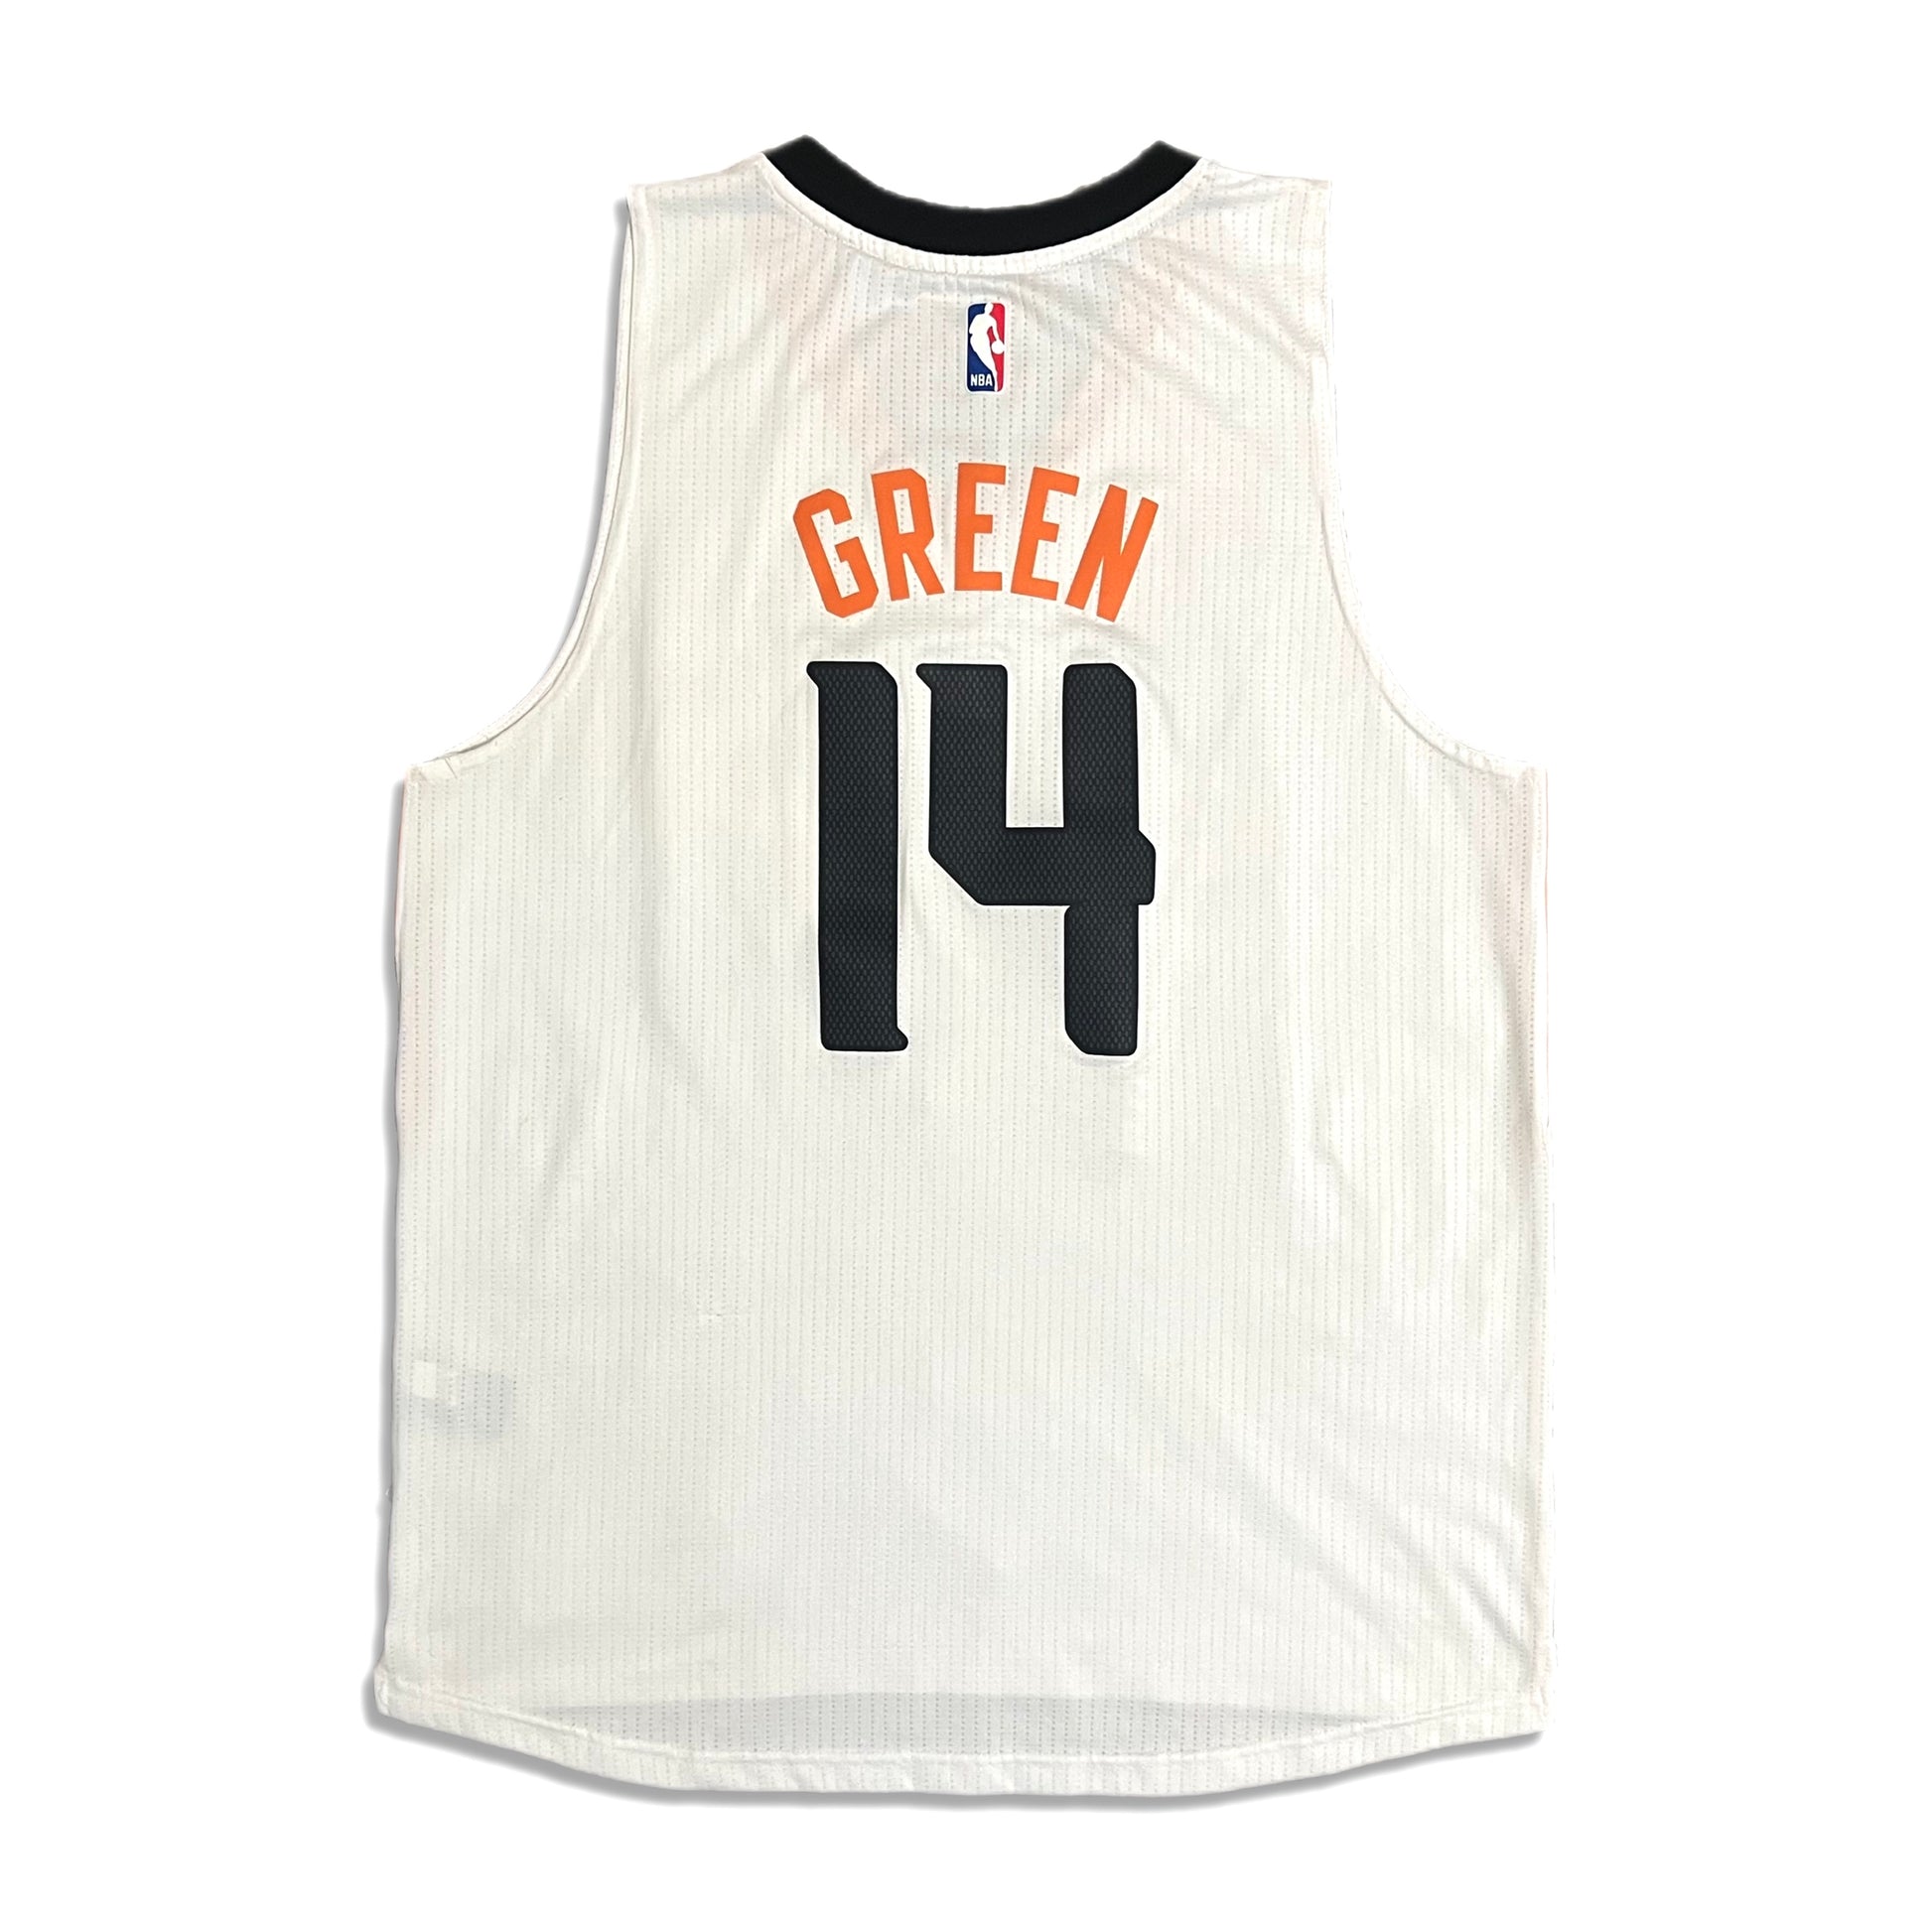 Adidas NBA Phoenix Suns Gerald Green Basketball Jersey